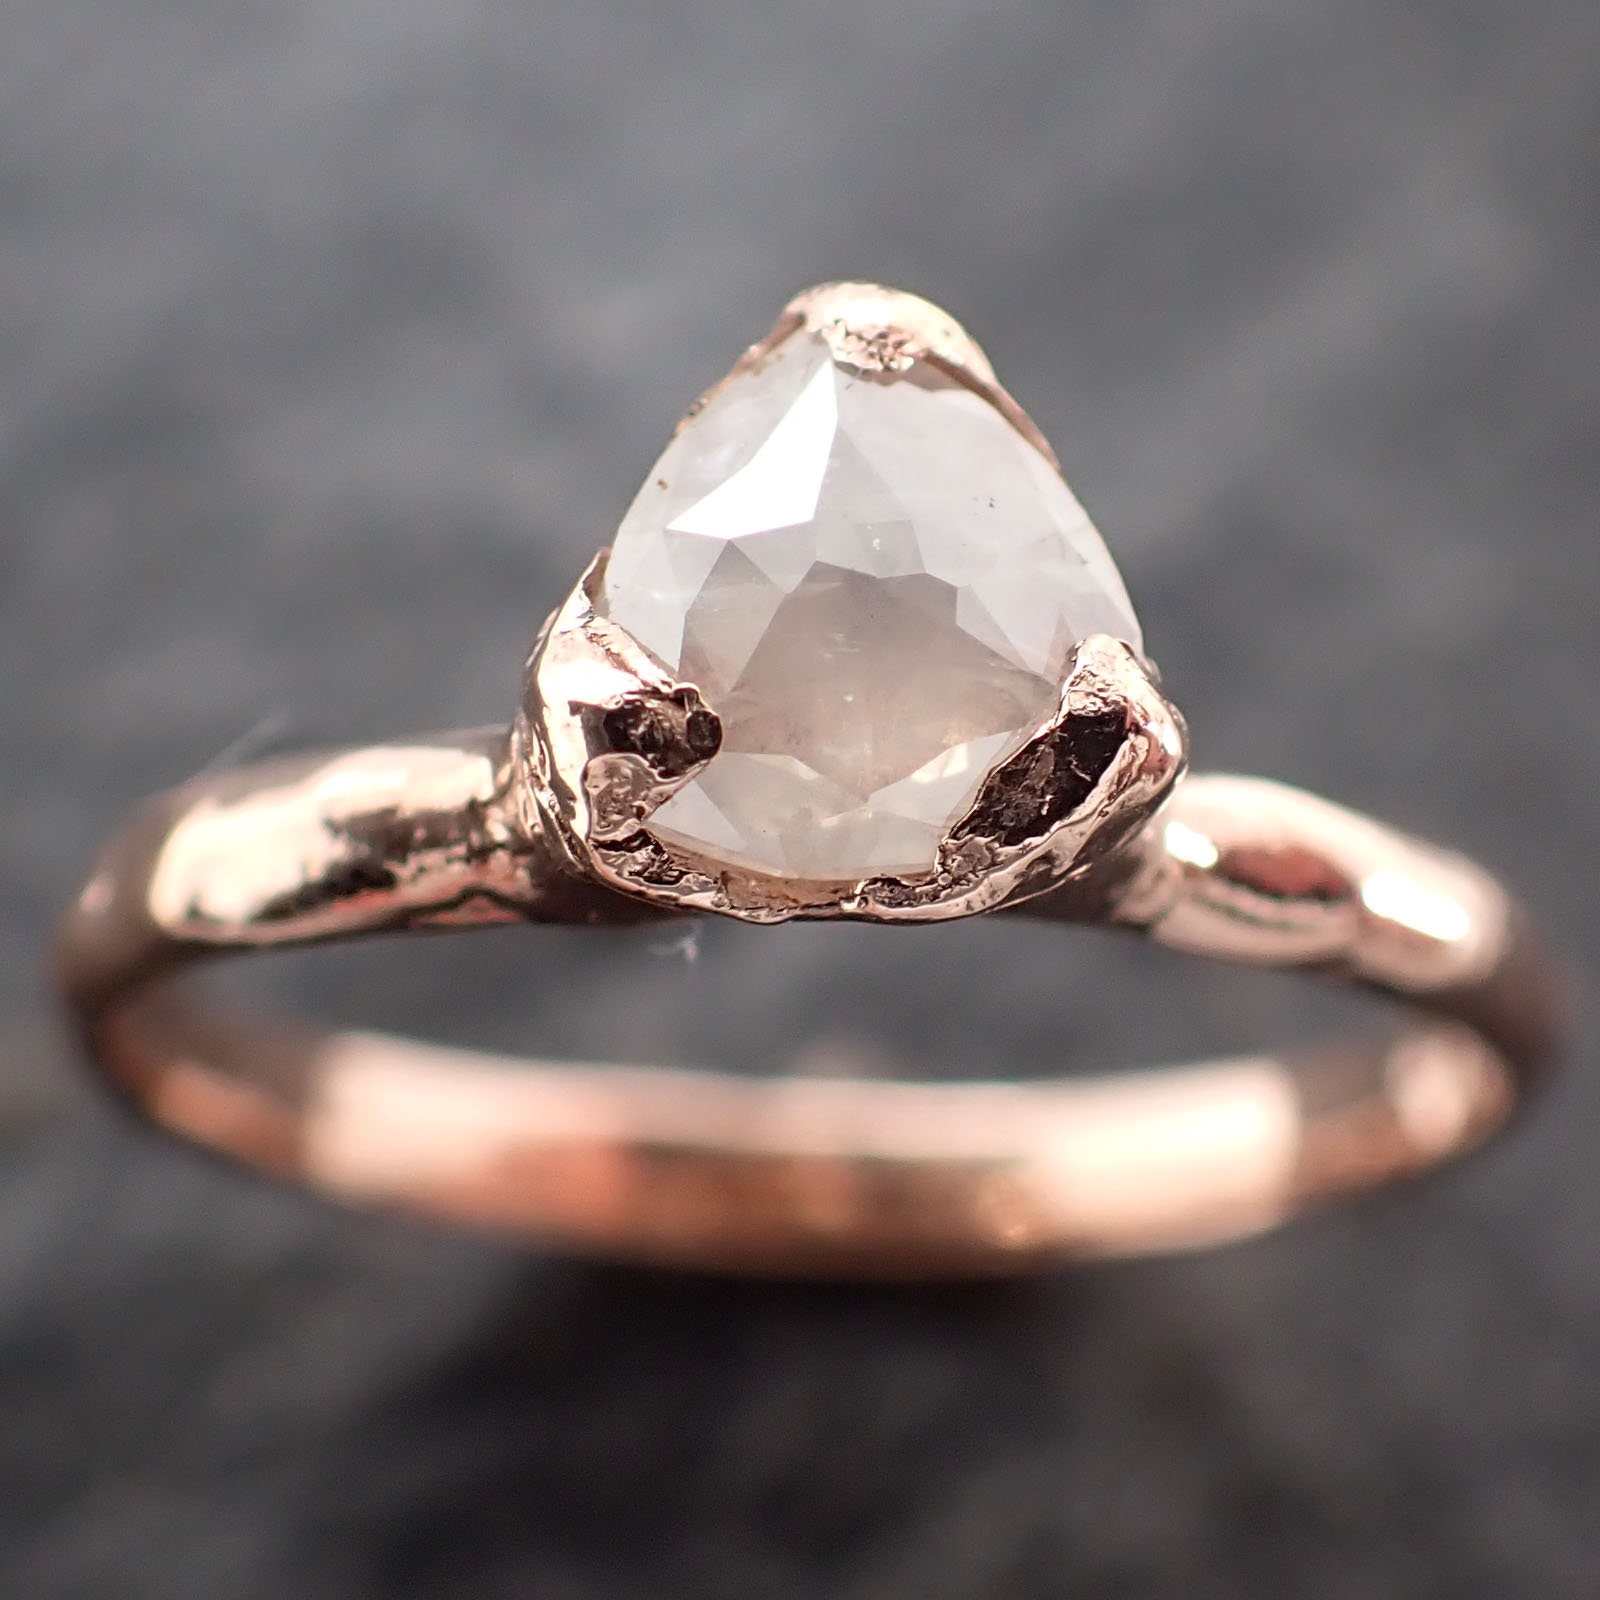 Fancy Cut Weißer Diamant Solitär Verlobungsring 14K Roségold Ehering Byangeline 2781 von byAngeline